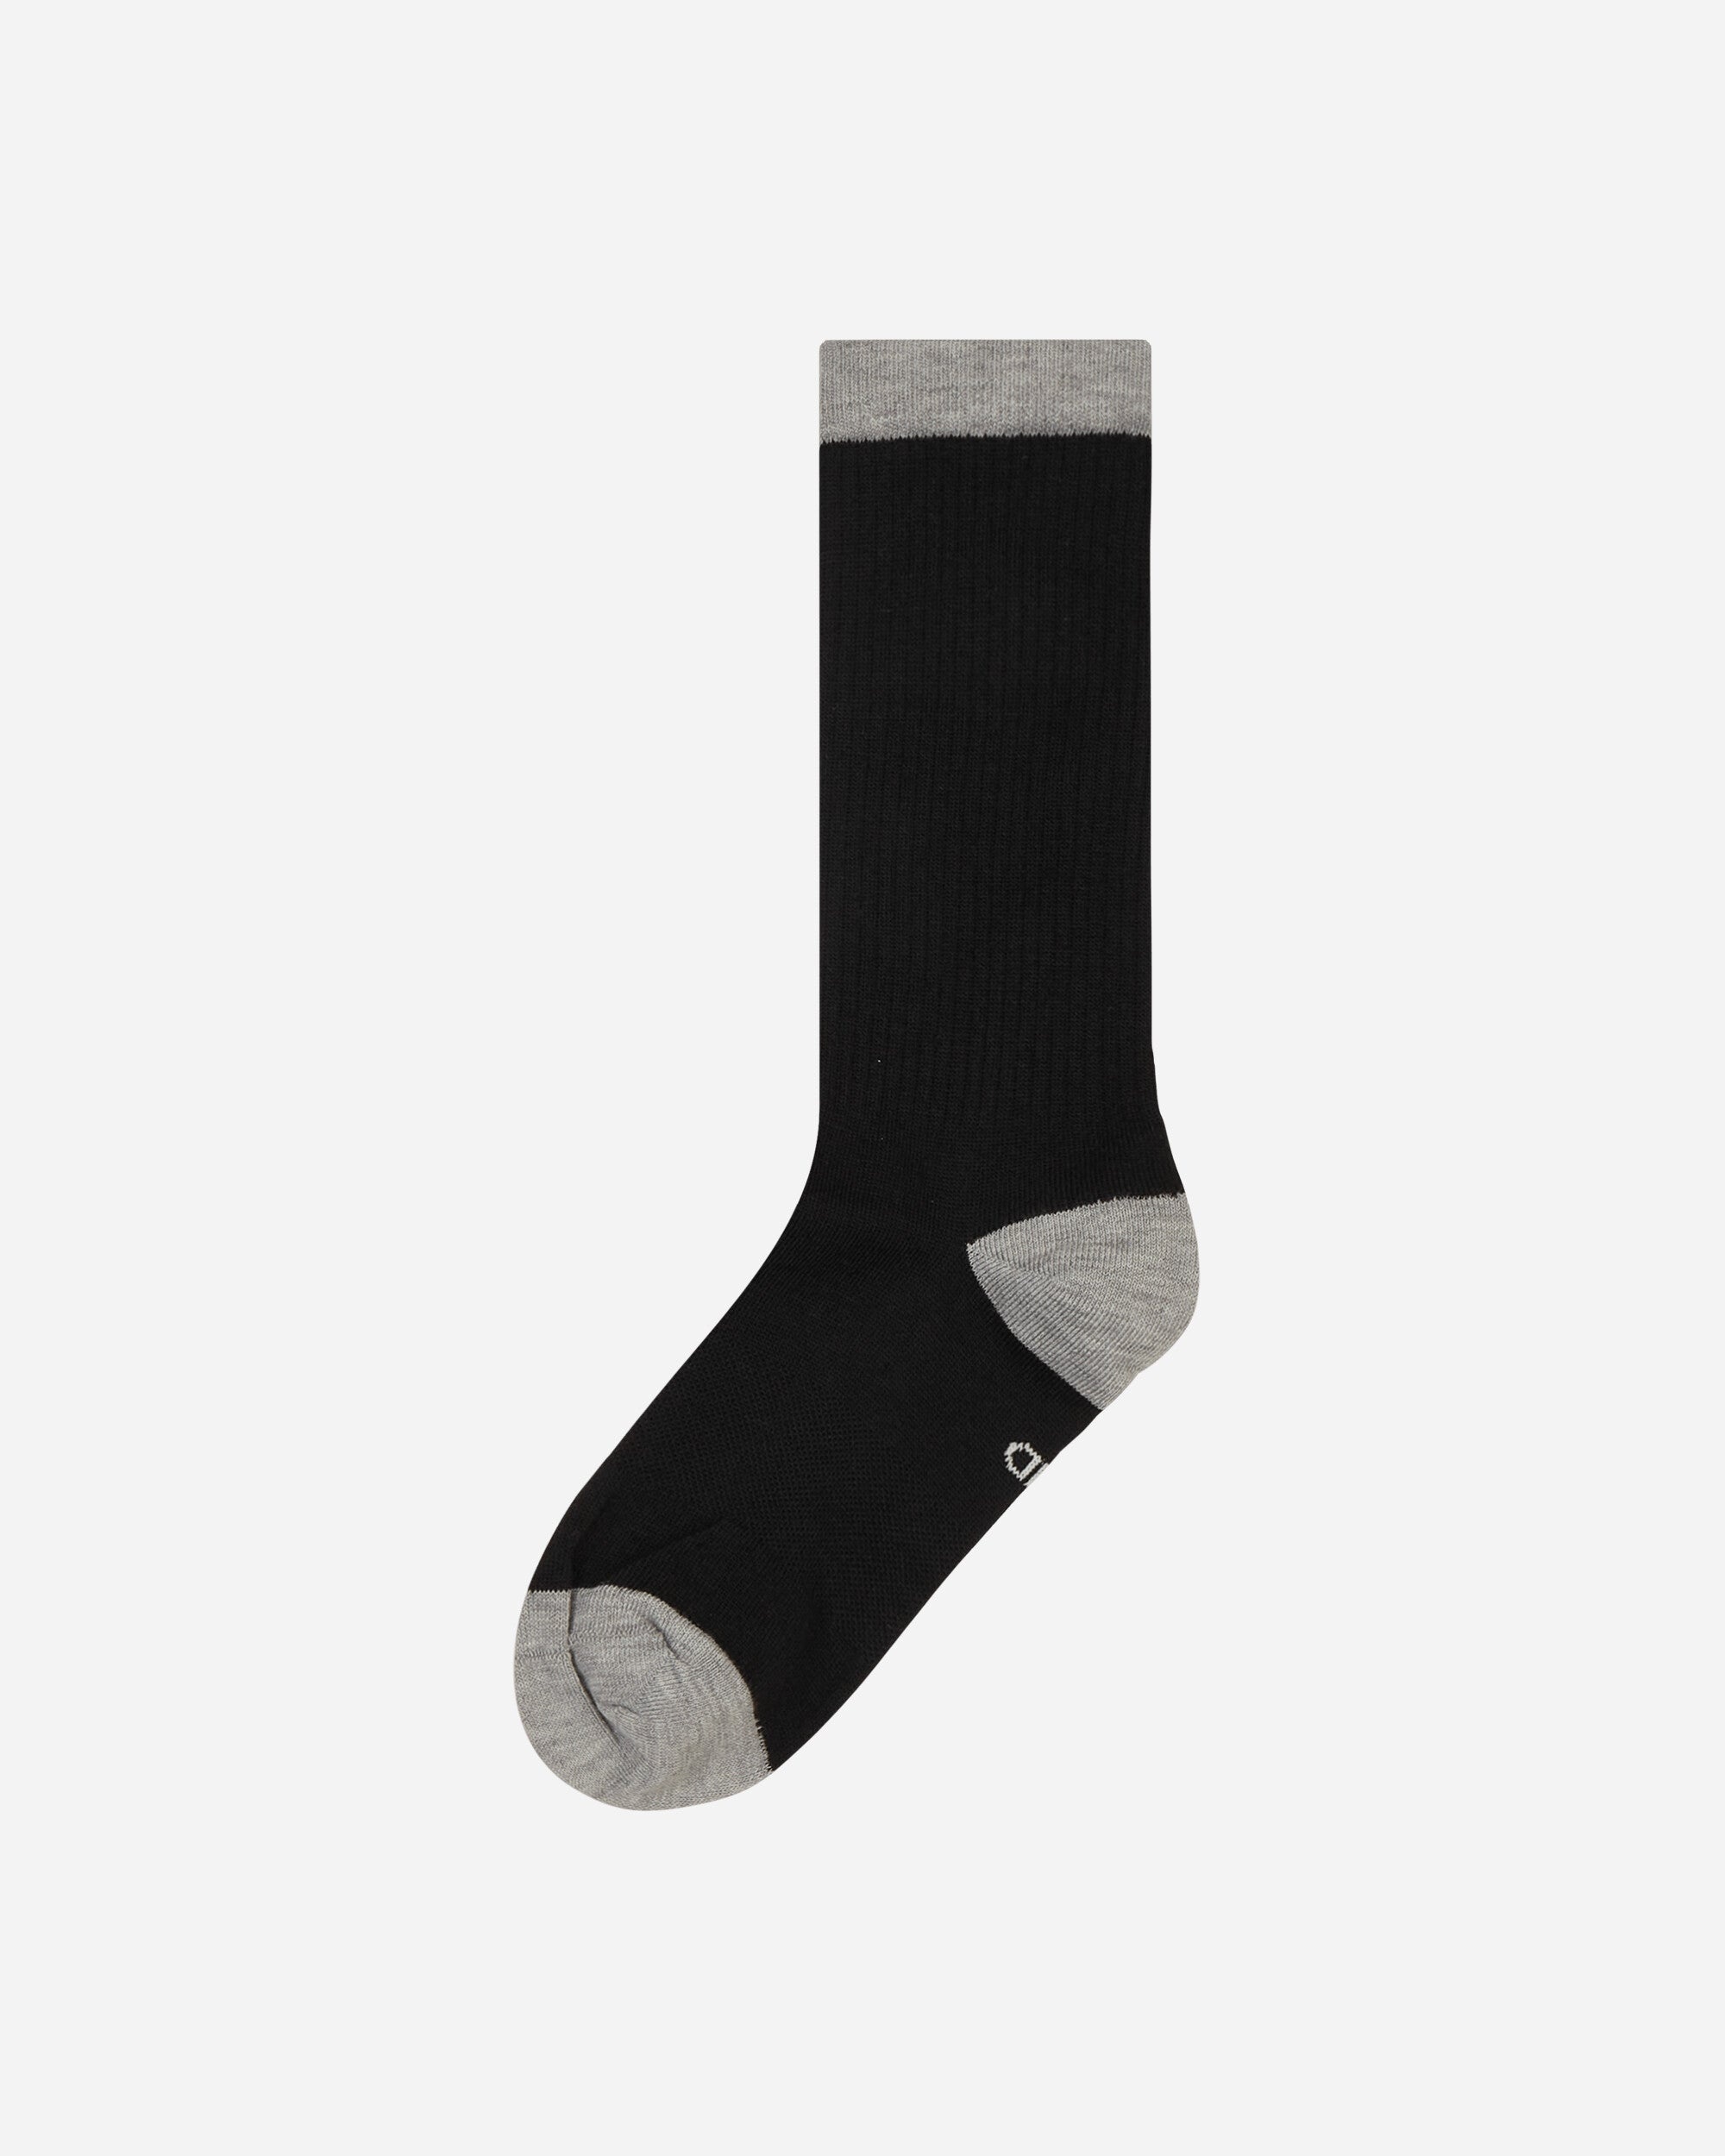 Everyday Essentials Crew Socks Multicolor Grey / Black - 3